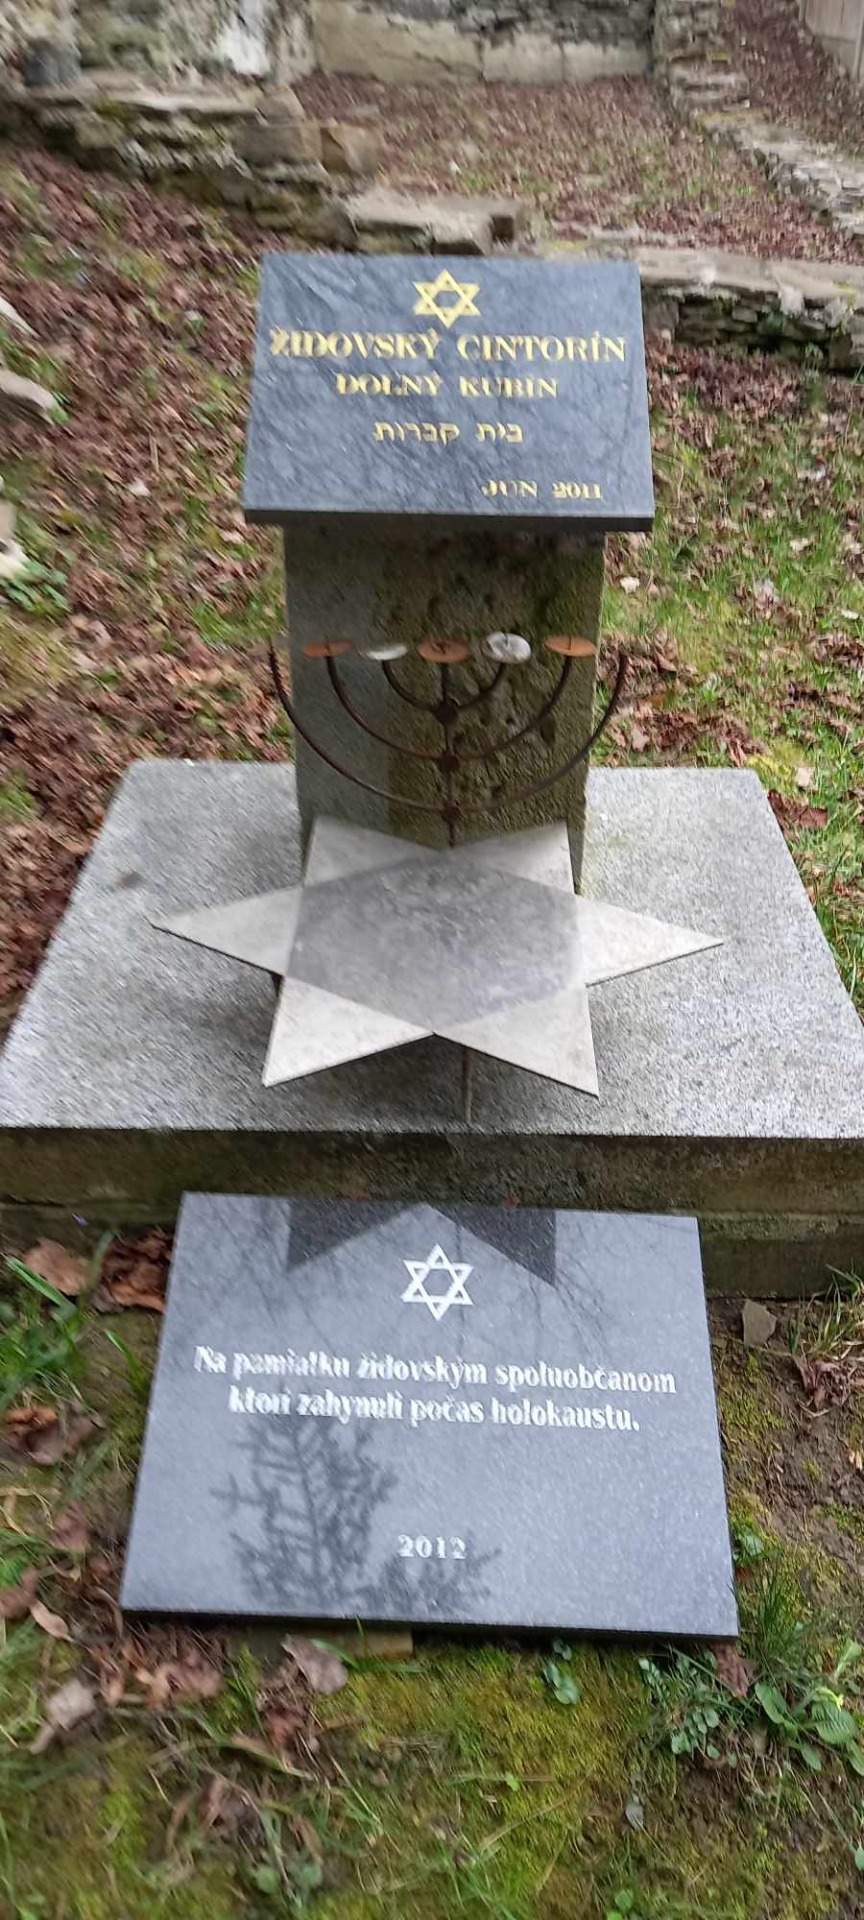 Pamätník na Židovskom cintoríne v DK neodmysliteľne patrí k histórii mesta Dolný Kubín